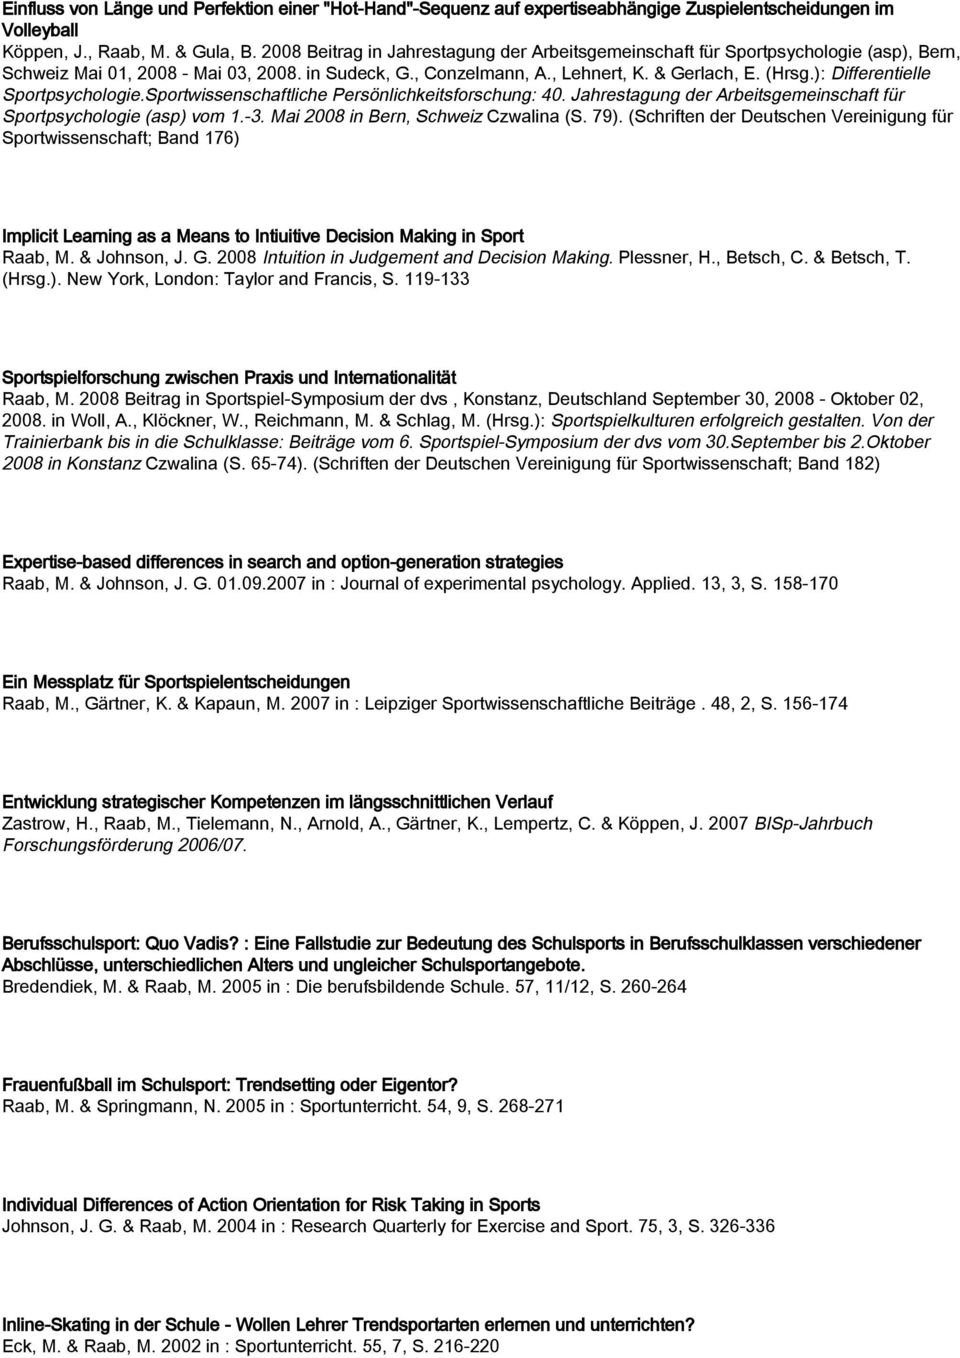 ): Differentielle Sportpsychologie.Sportwissenschaftliche Persönlichkeitsforschung: 40. Jahrestagung der Arbeitsgemeinschaft für Sportpsychologie (asp) vom 1.-3. Mai 2008 in Bern, Schweiz Czwalina (S.